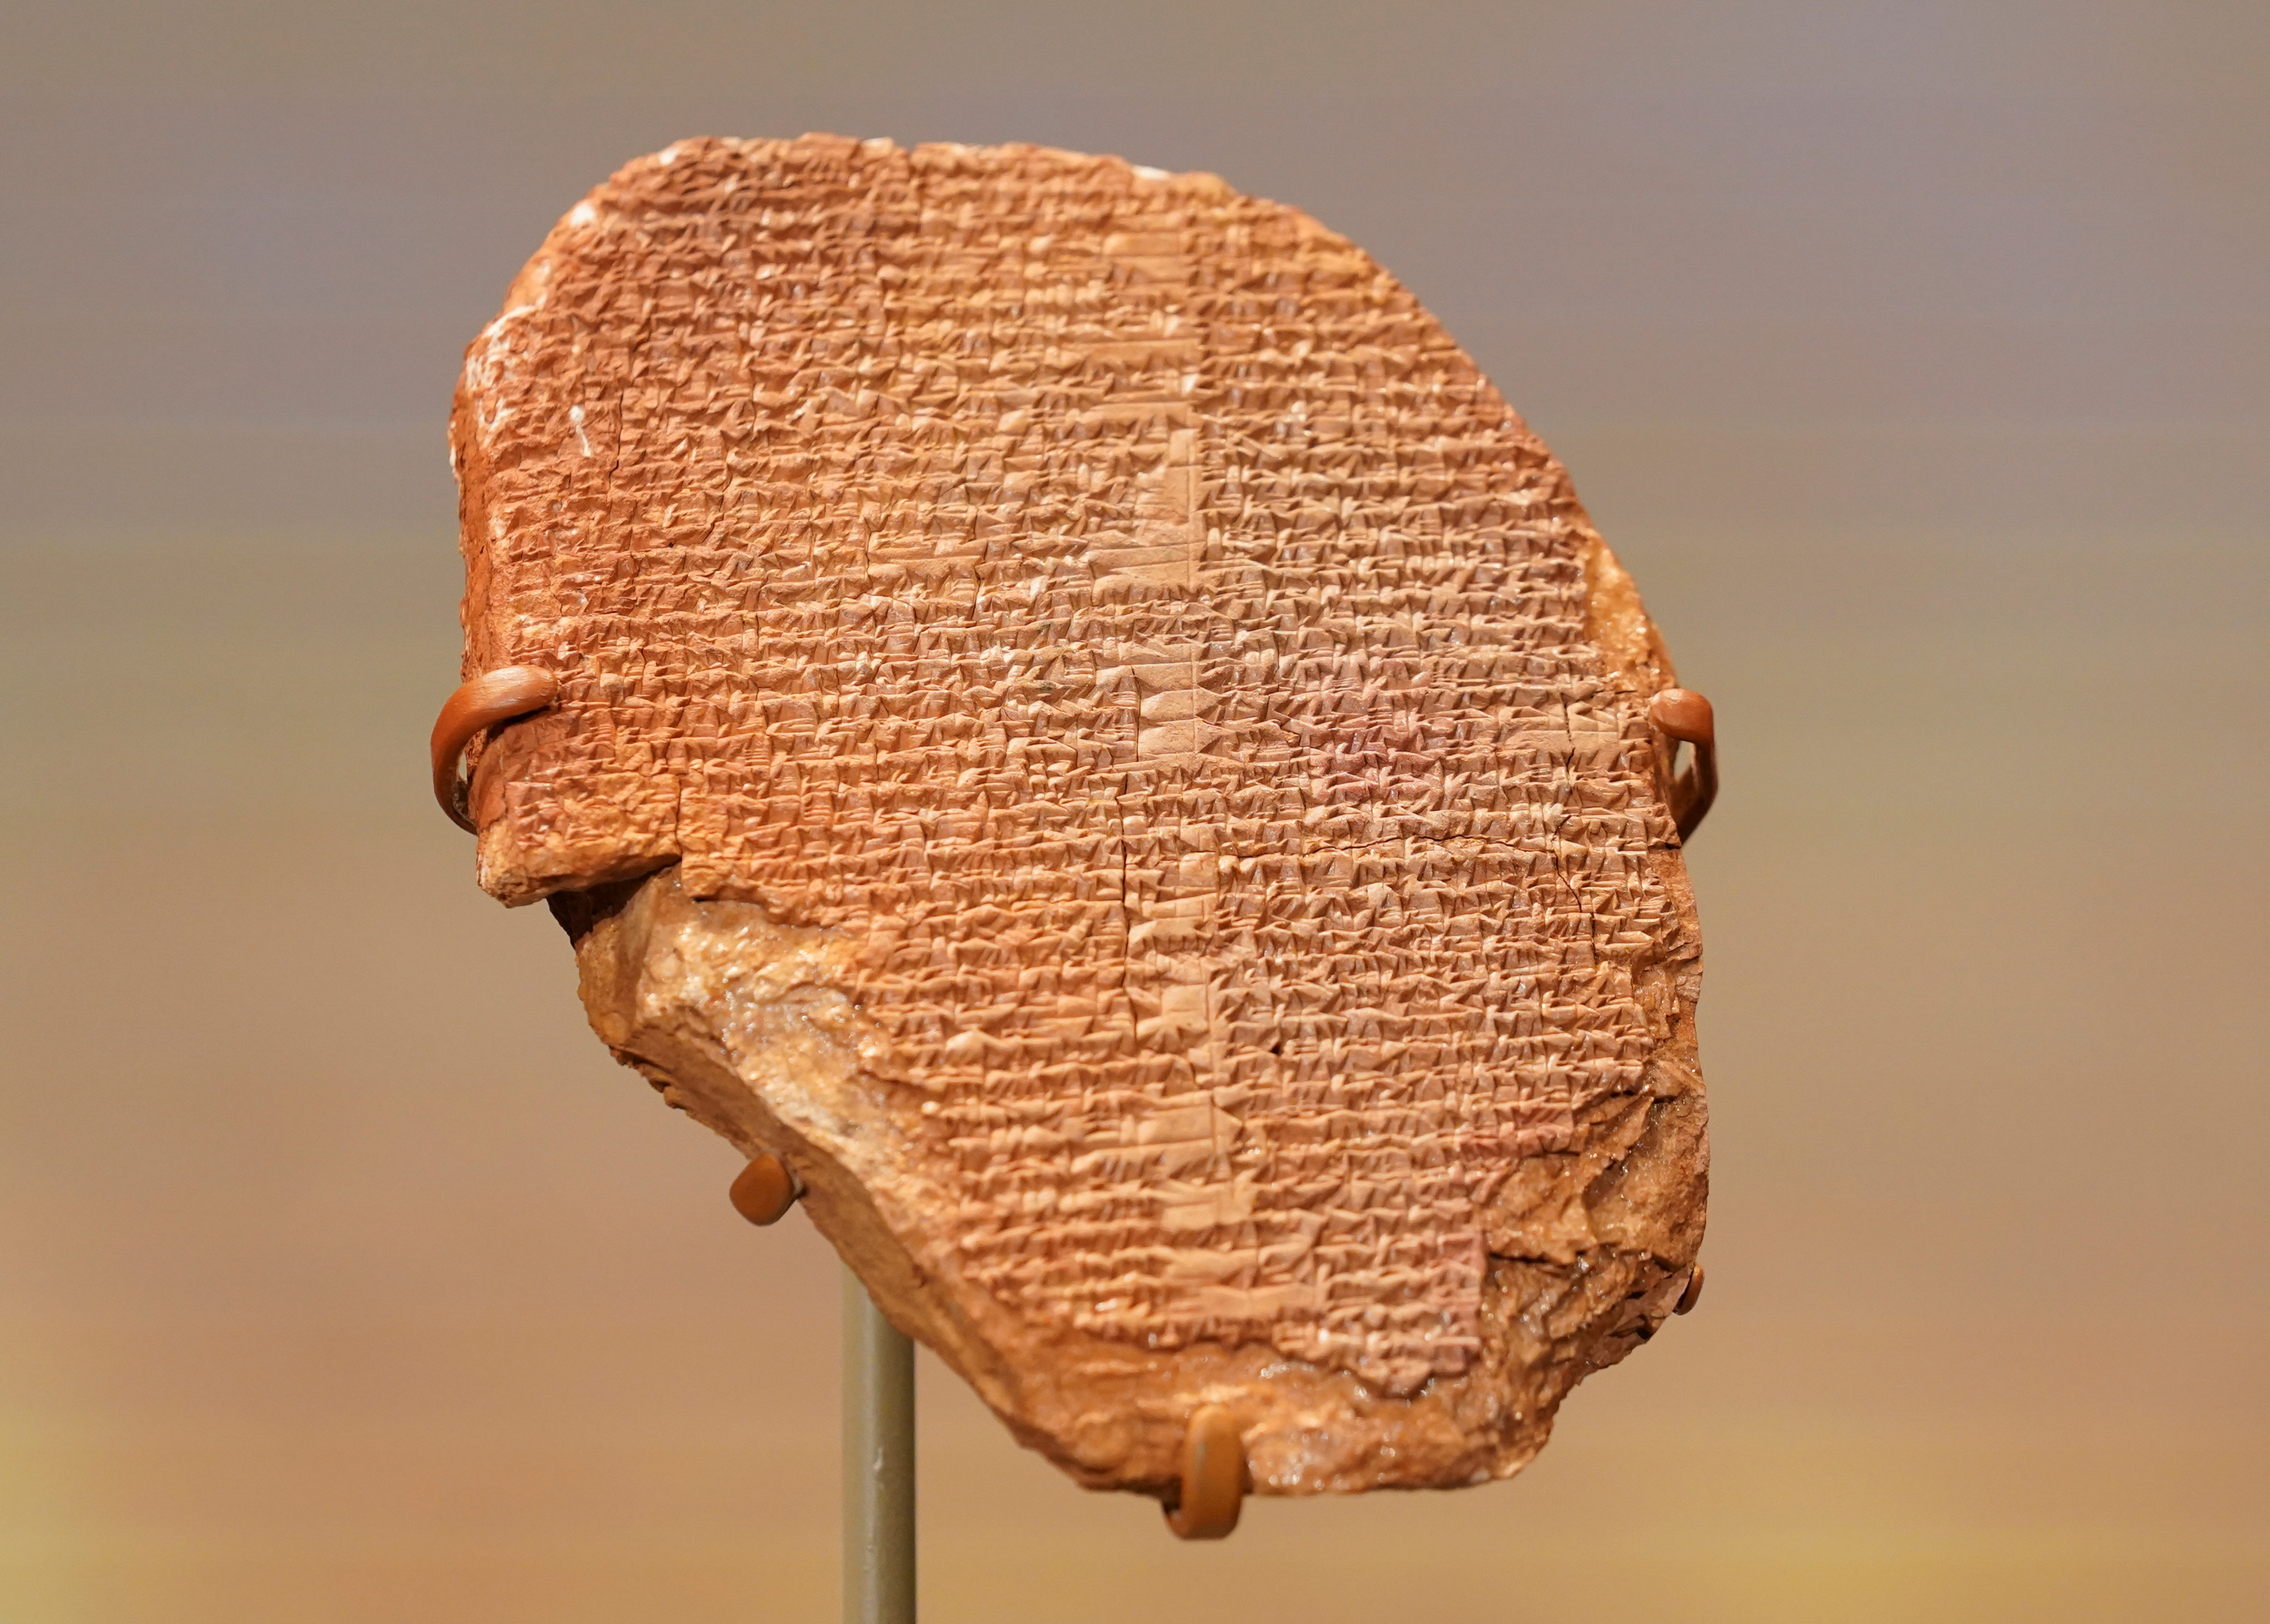 En 2021, EEUU le devolvió a Irak una tablilla del Gilgamesh, la primera epopeya de la historia, que se encontraba bajo posesión del Smithsonian. (REUTERS/Kevin Lamarque)